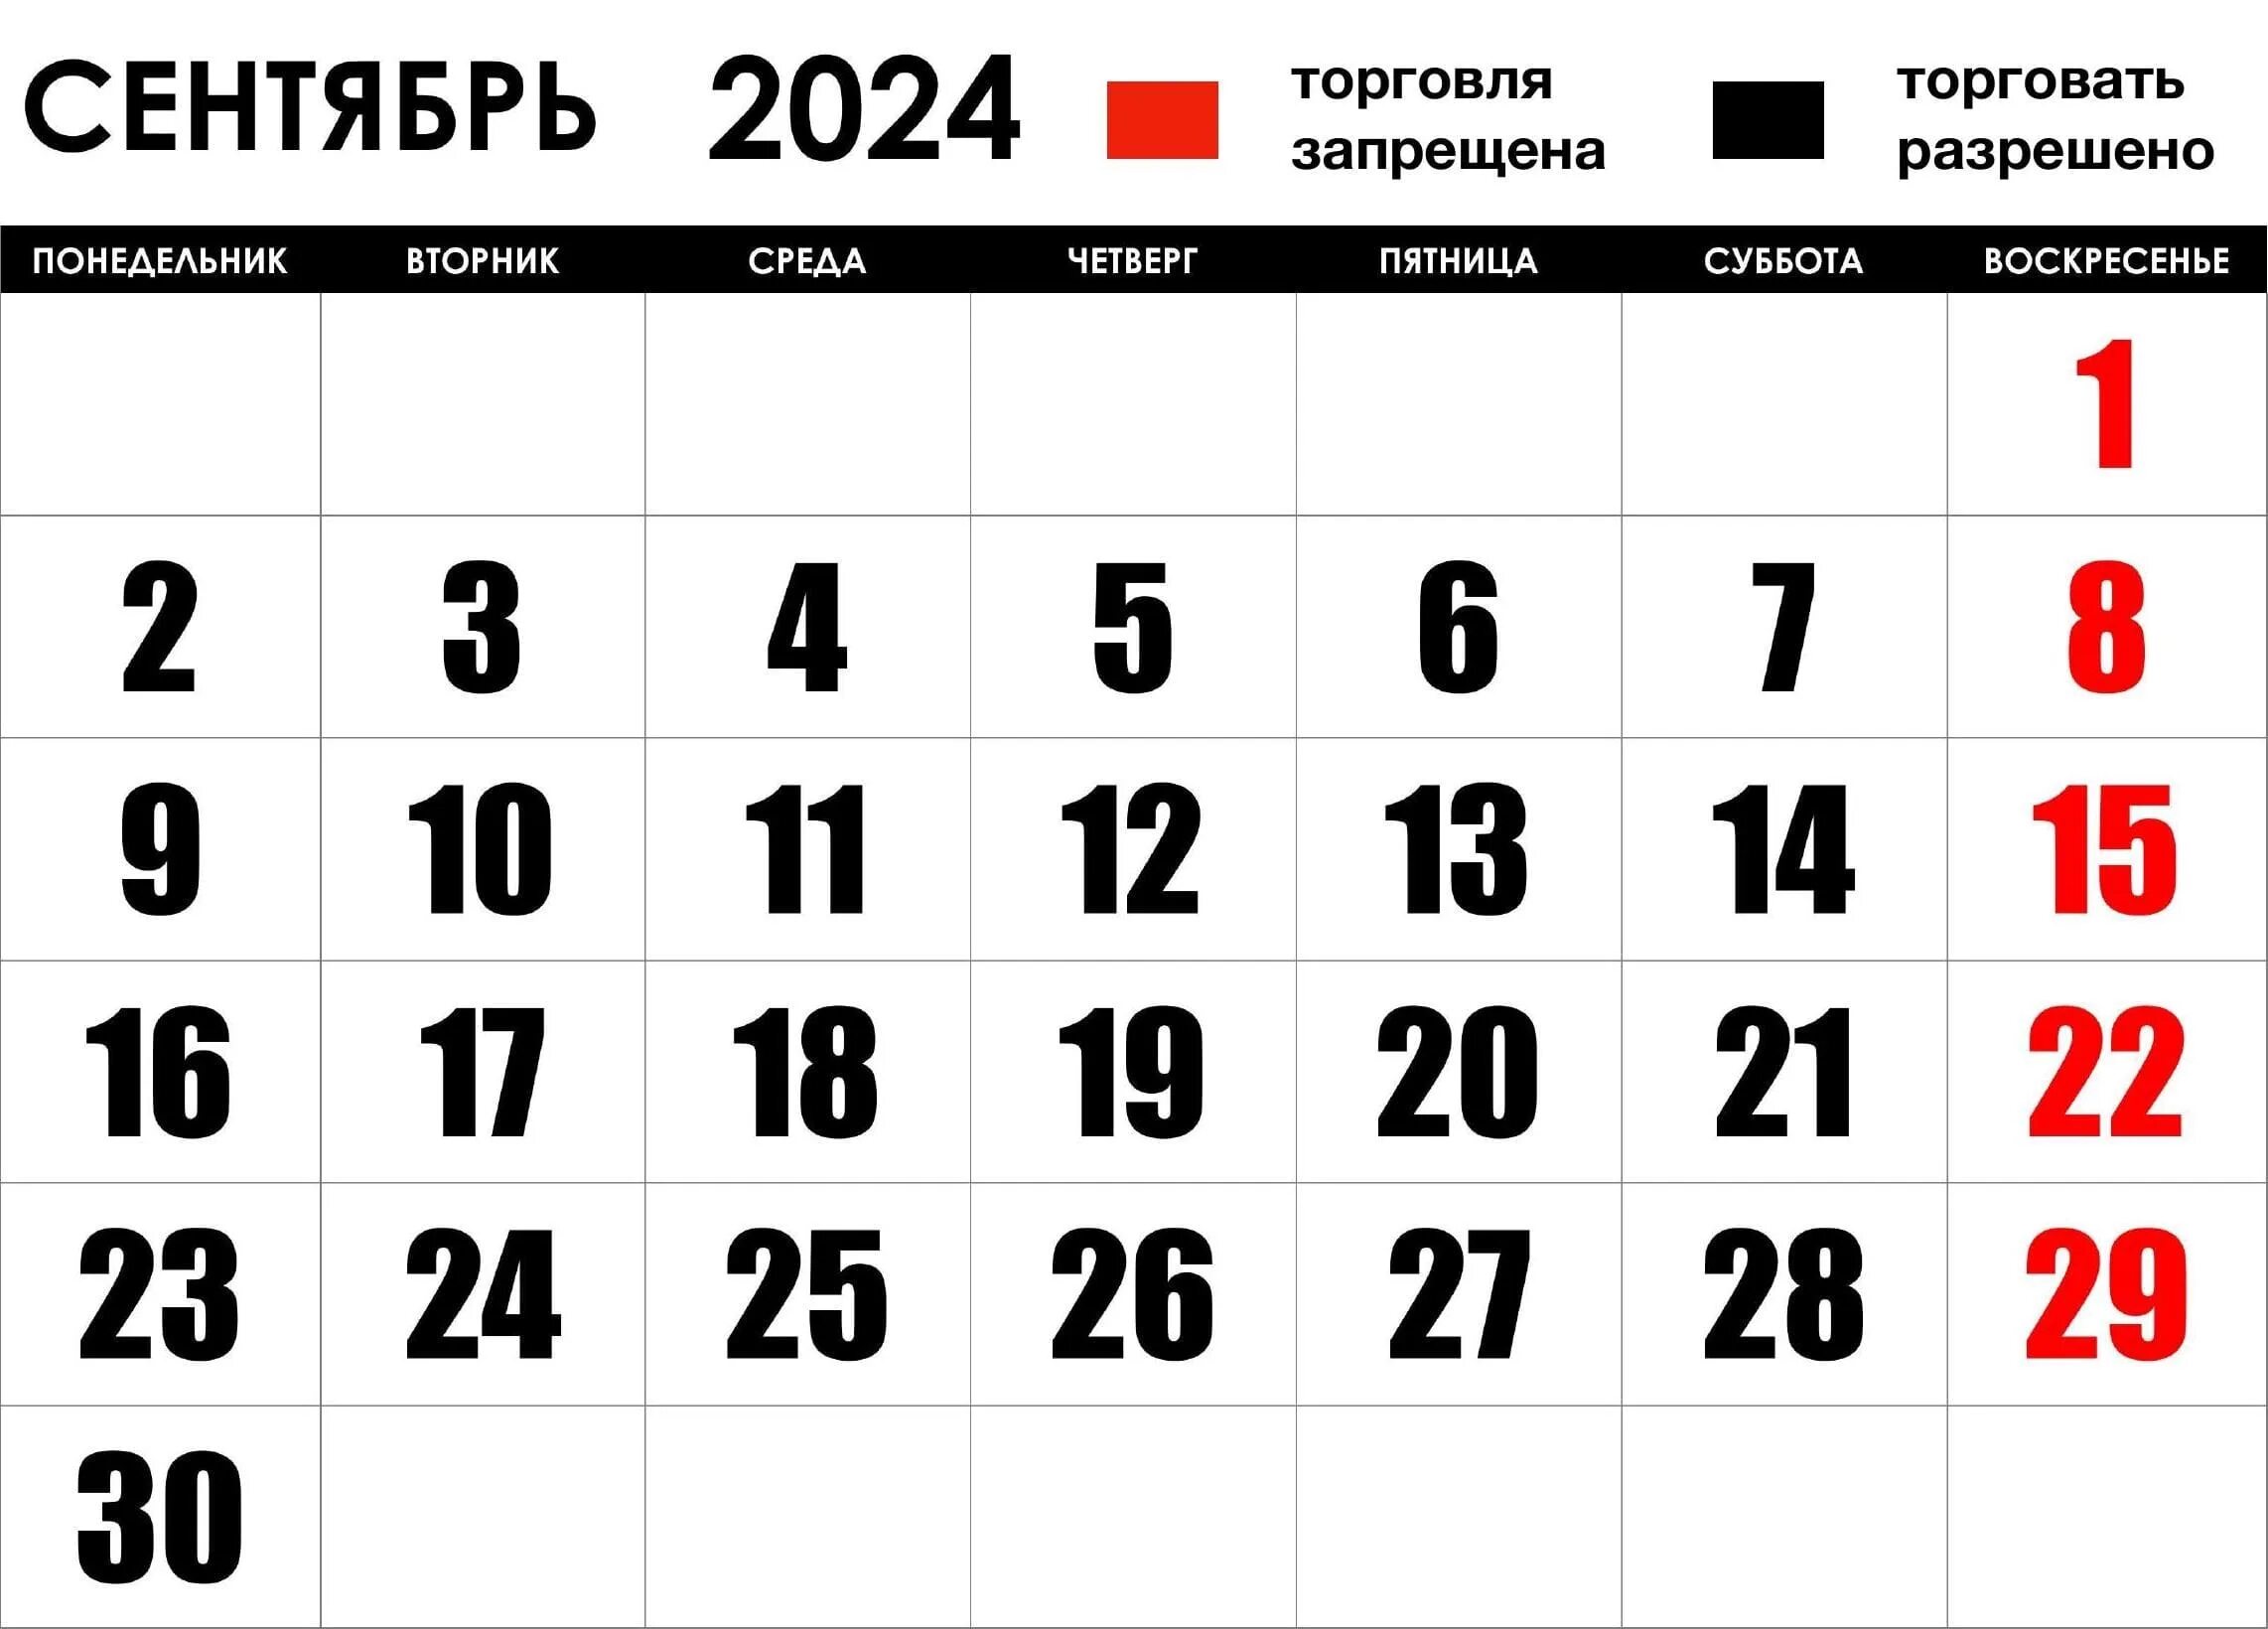 Сколько дней в апреле 2024 г. Календарь насентяюрь 2024. Сентябрь 2024. Календарь сентябрь 2024 года. Sentabr Calendar 2024.